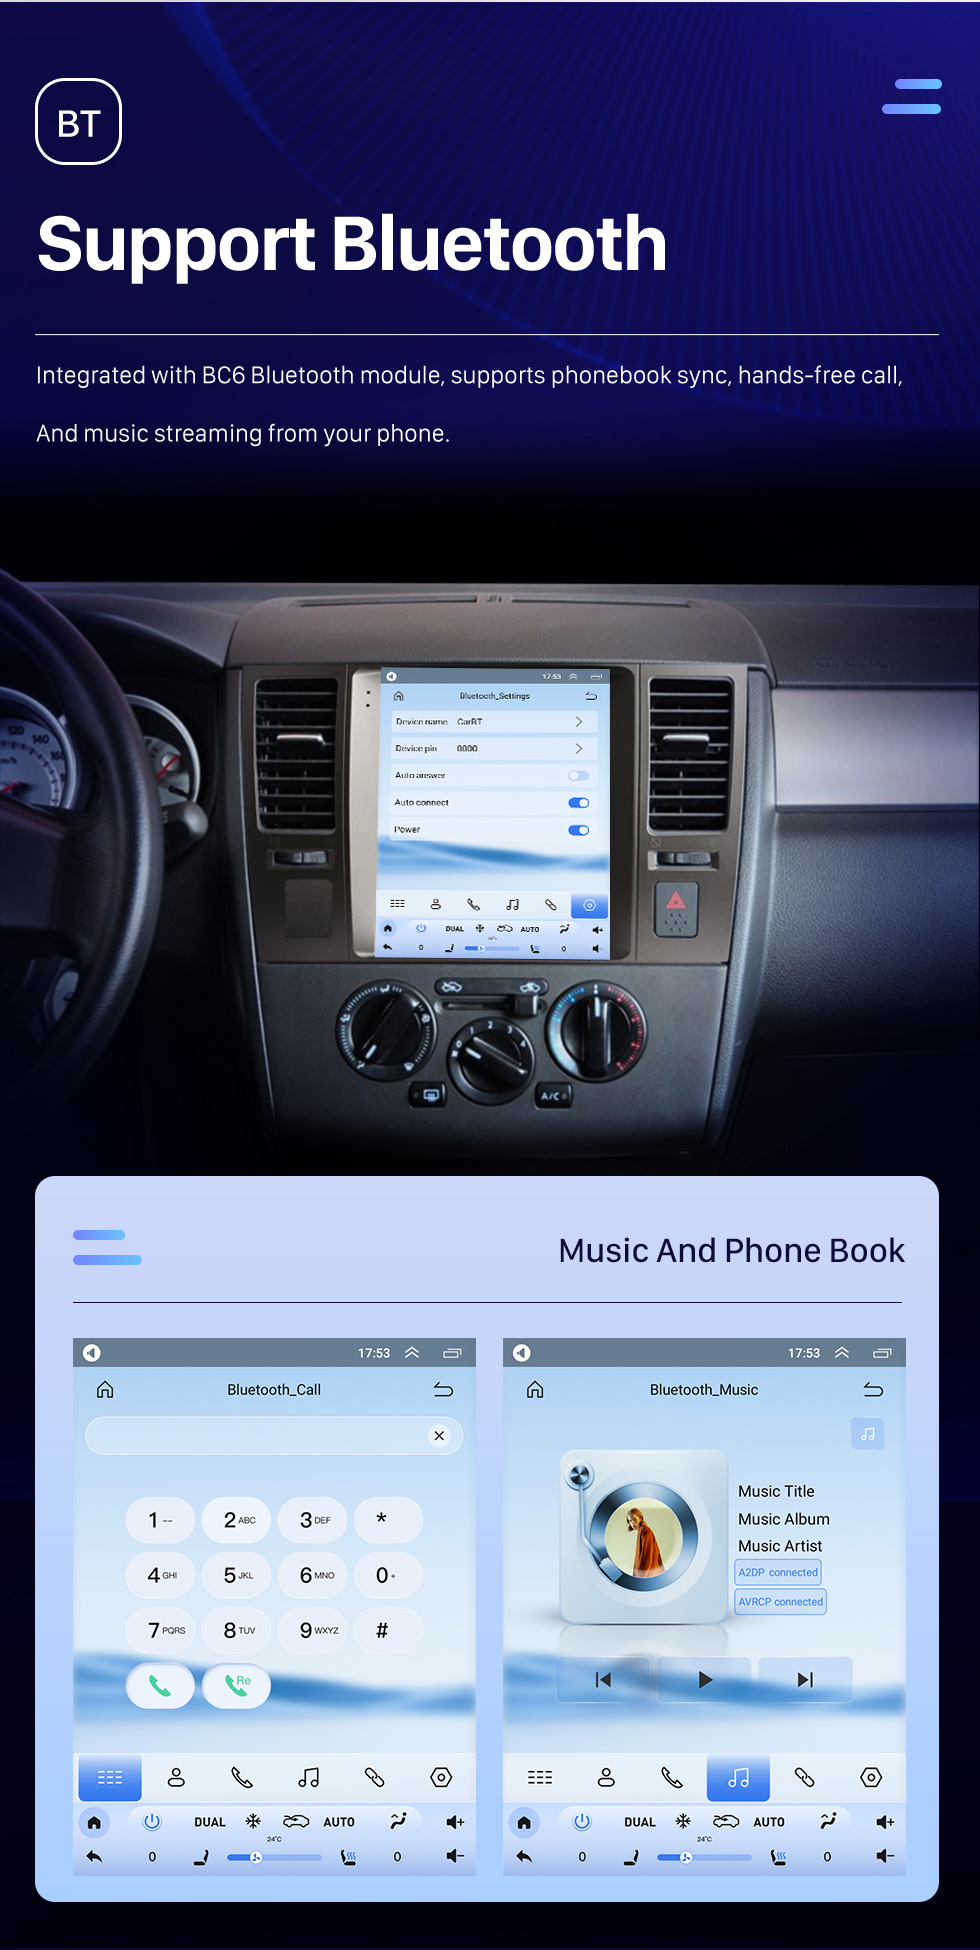 Seicane 2008-2011 Nissan Tiida 9.7 pulgadas Android 10.0 Radio de navegación GPS con pantalla táctil Bluetooth USB WIFI compatible con Carplay Cámara trasera